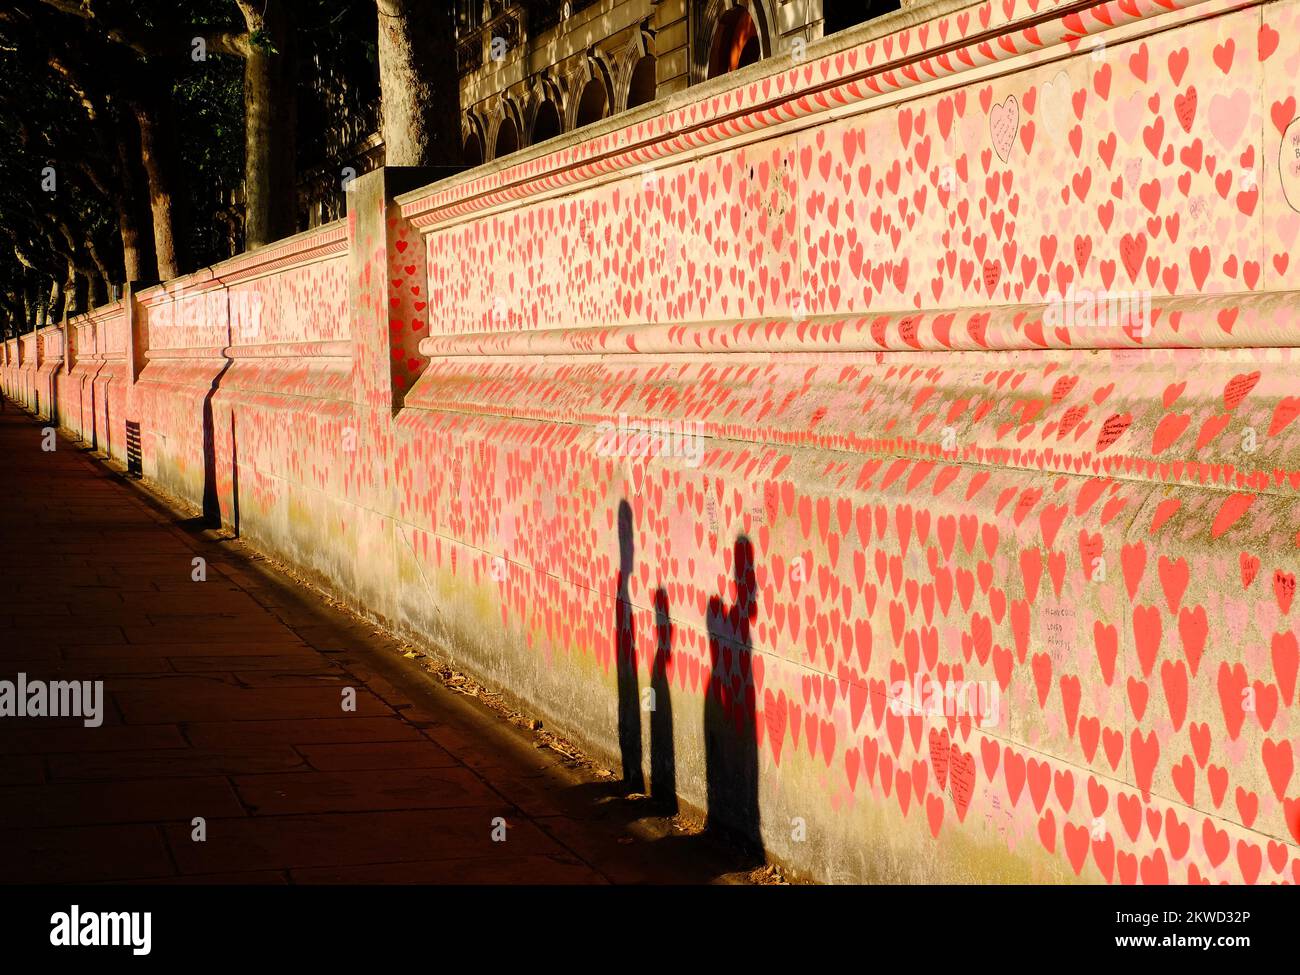 Muro Conmemorativo Nacional Covid Oro brillante poco antes del atardecer con sombras de transeúntes en la orilla sur del Támesis, Londres, Inglaterra Foto de stock